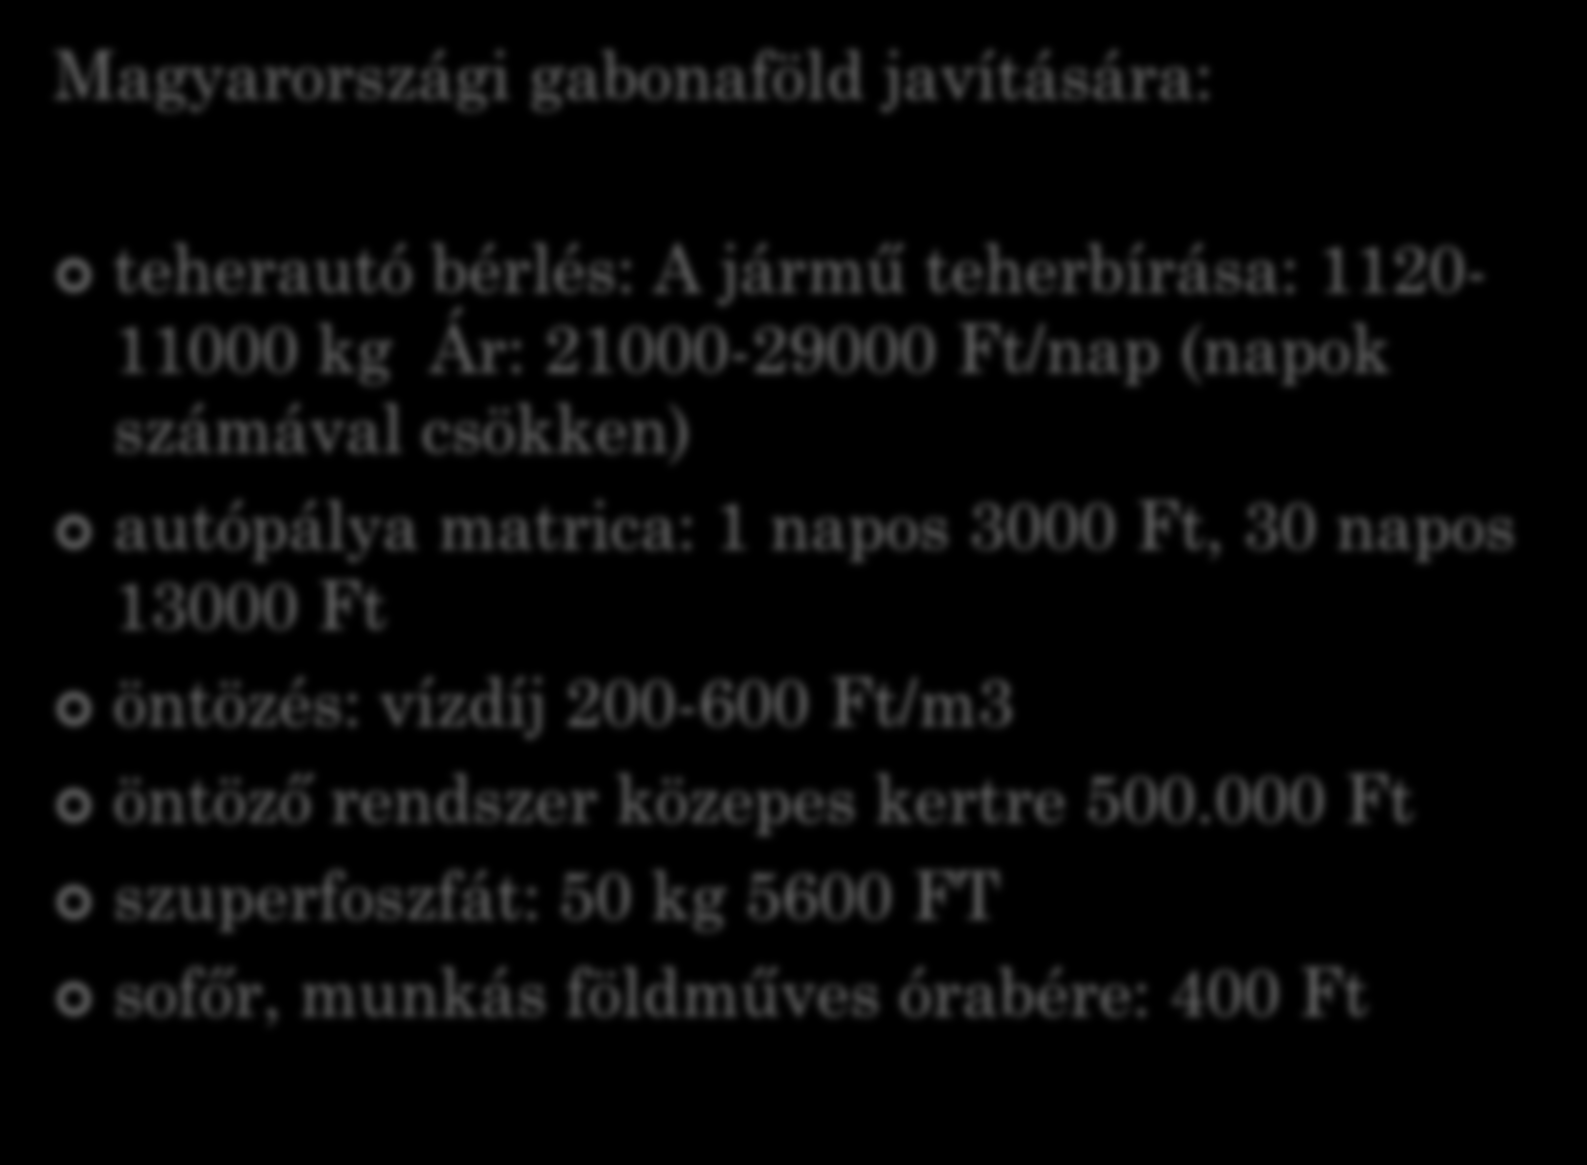 GAZDASÁGI ANALÍZIS Magyarországi gabonaföld javítására: teherautó bérlés: A jármű teherbírása: 1120-11000 kg Ár: 21000-29000 Ft/nap (napok számával csökken) autópálya matrica: